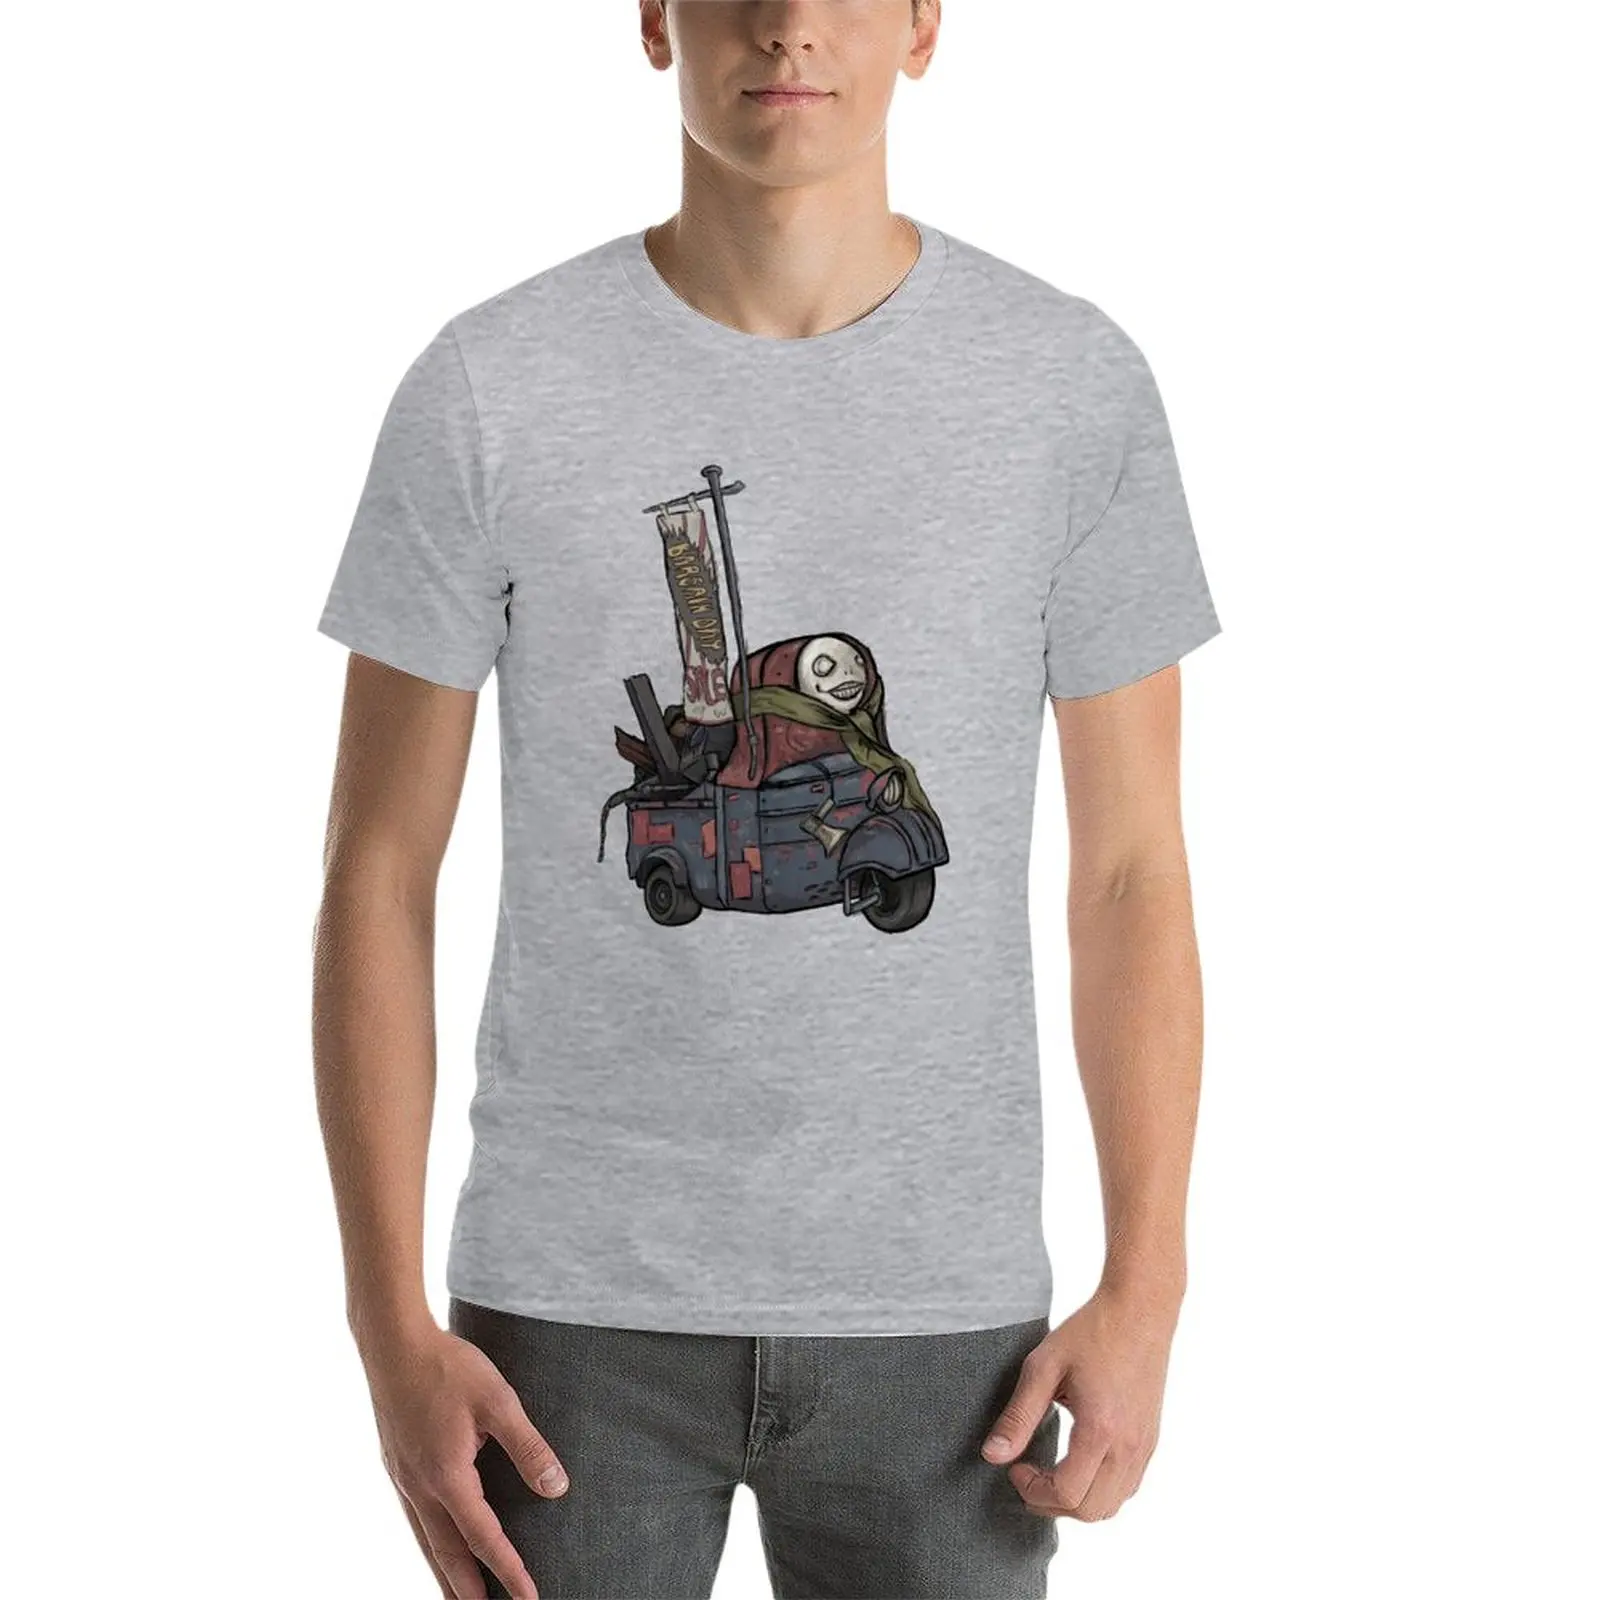 Новая футболка Emils Shop - Nier, блузка, одежда с аниме, мужская футболка Изображение 2